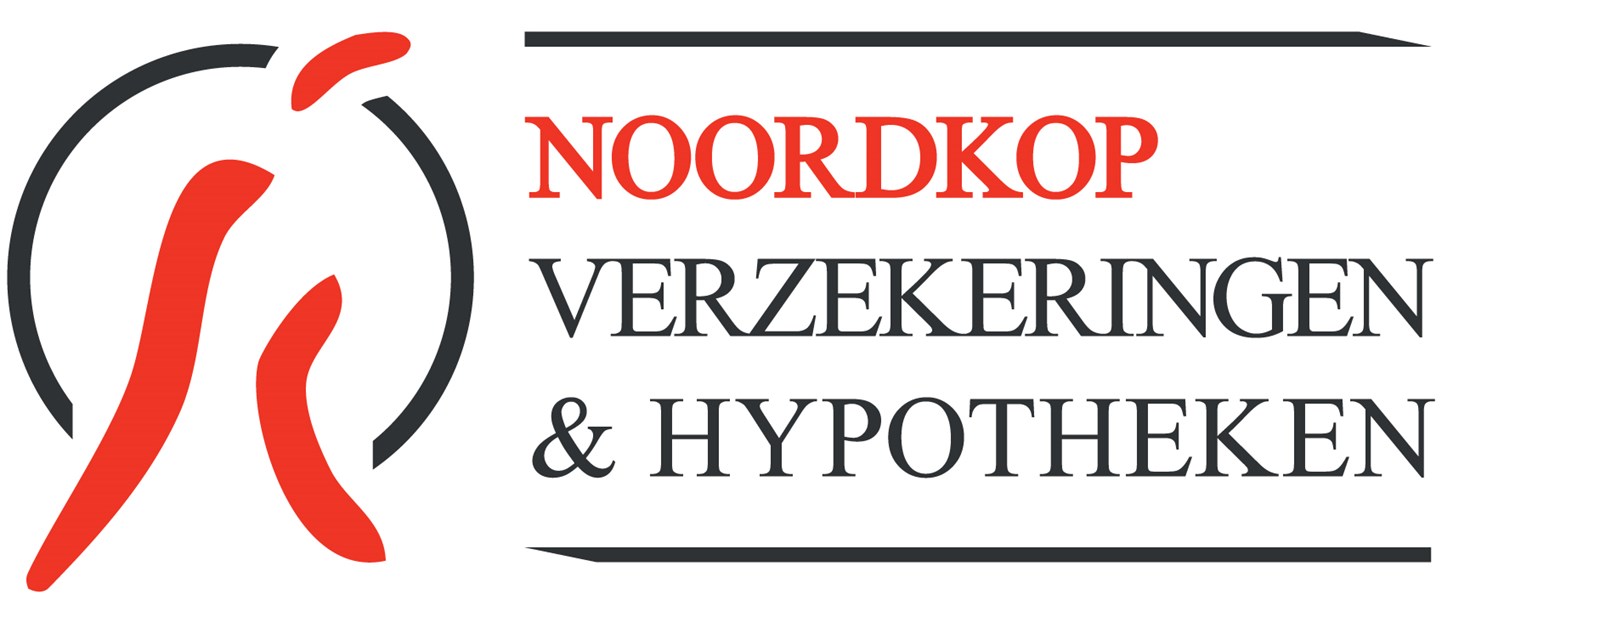 Afbeelding van Noordkop Hypotheken en Verzekeringen